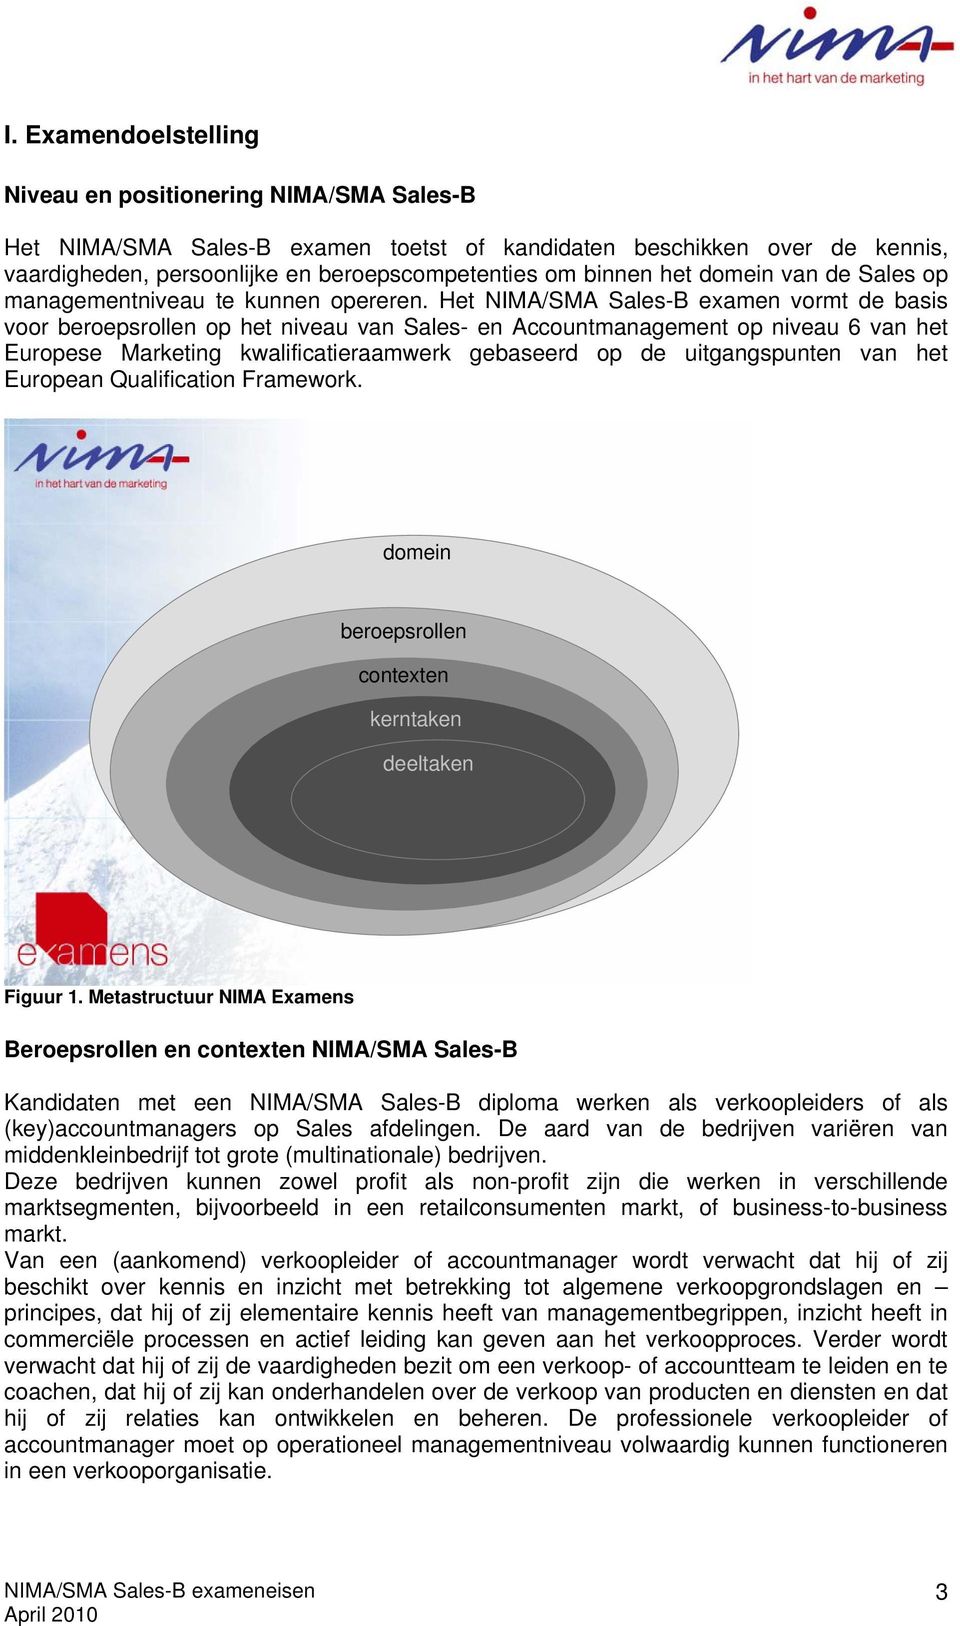 Het NIMA/SMA Sales-B examen vormt de basis voor beroepsrollen op het niveau van Sales- en Accountmanagement op niveau 6 van het Europese Marketing kwalificatieraamwerk gebaseerd op de uitgangspunten